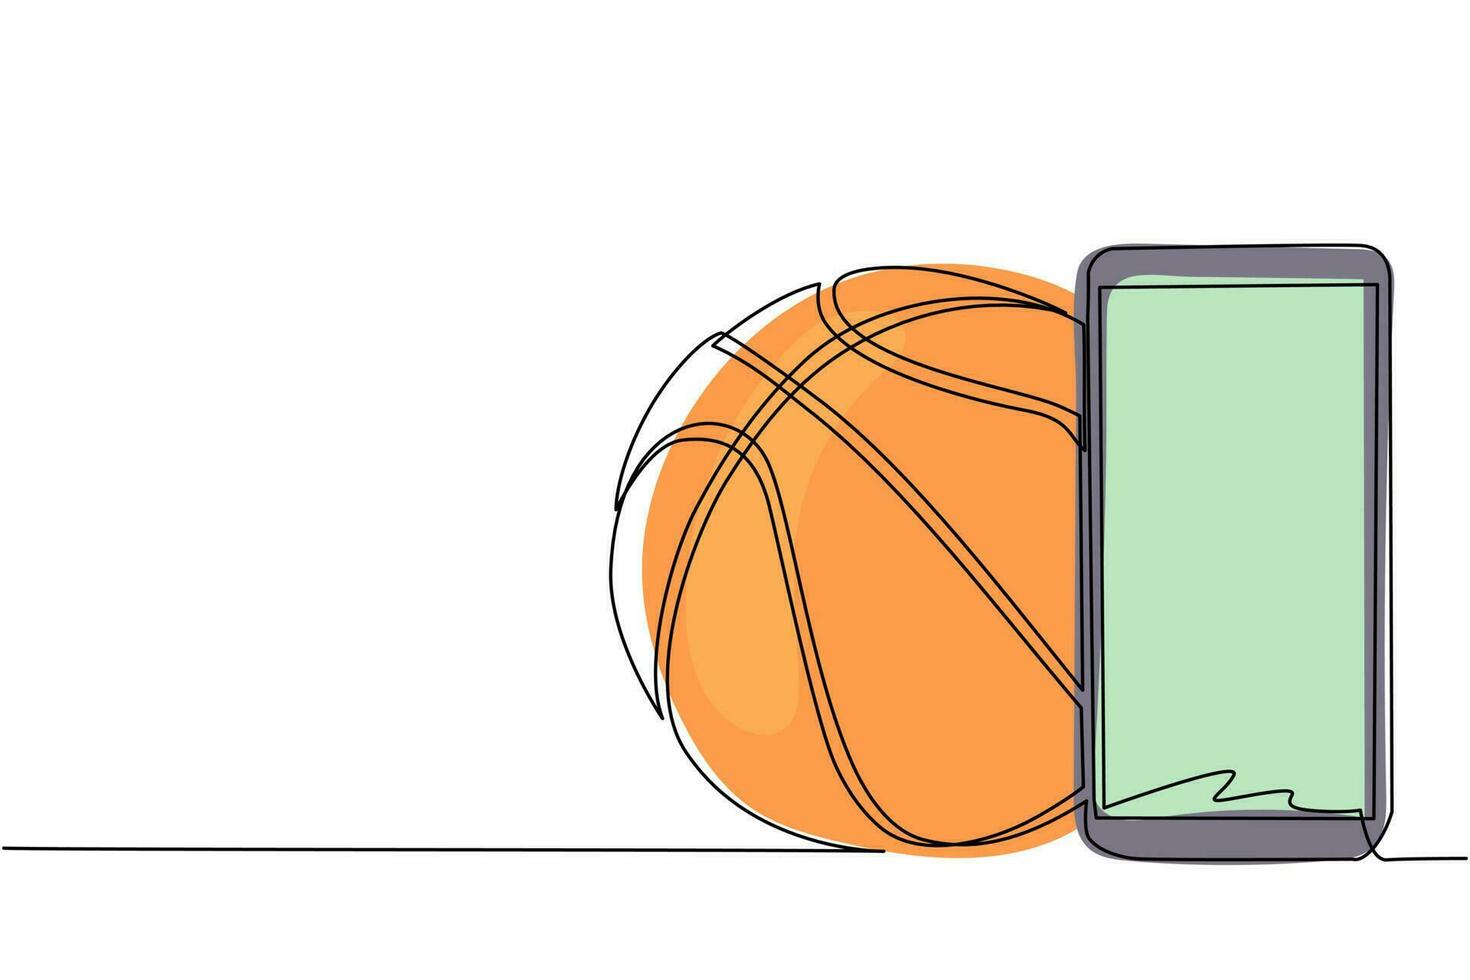 einzelne durchgehende linie, die smartphone und basketballball zeichnet. Smartphone mit App-Basketball. mobile Sport-Stream-Meisterschaft zu spielen. dynamische einzeilige abgehobene betragsgrafikdesign-vektorillustration vektor